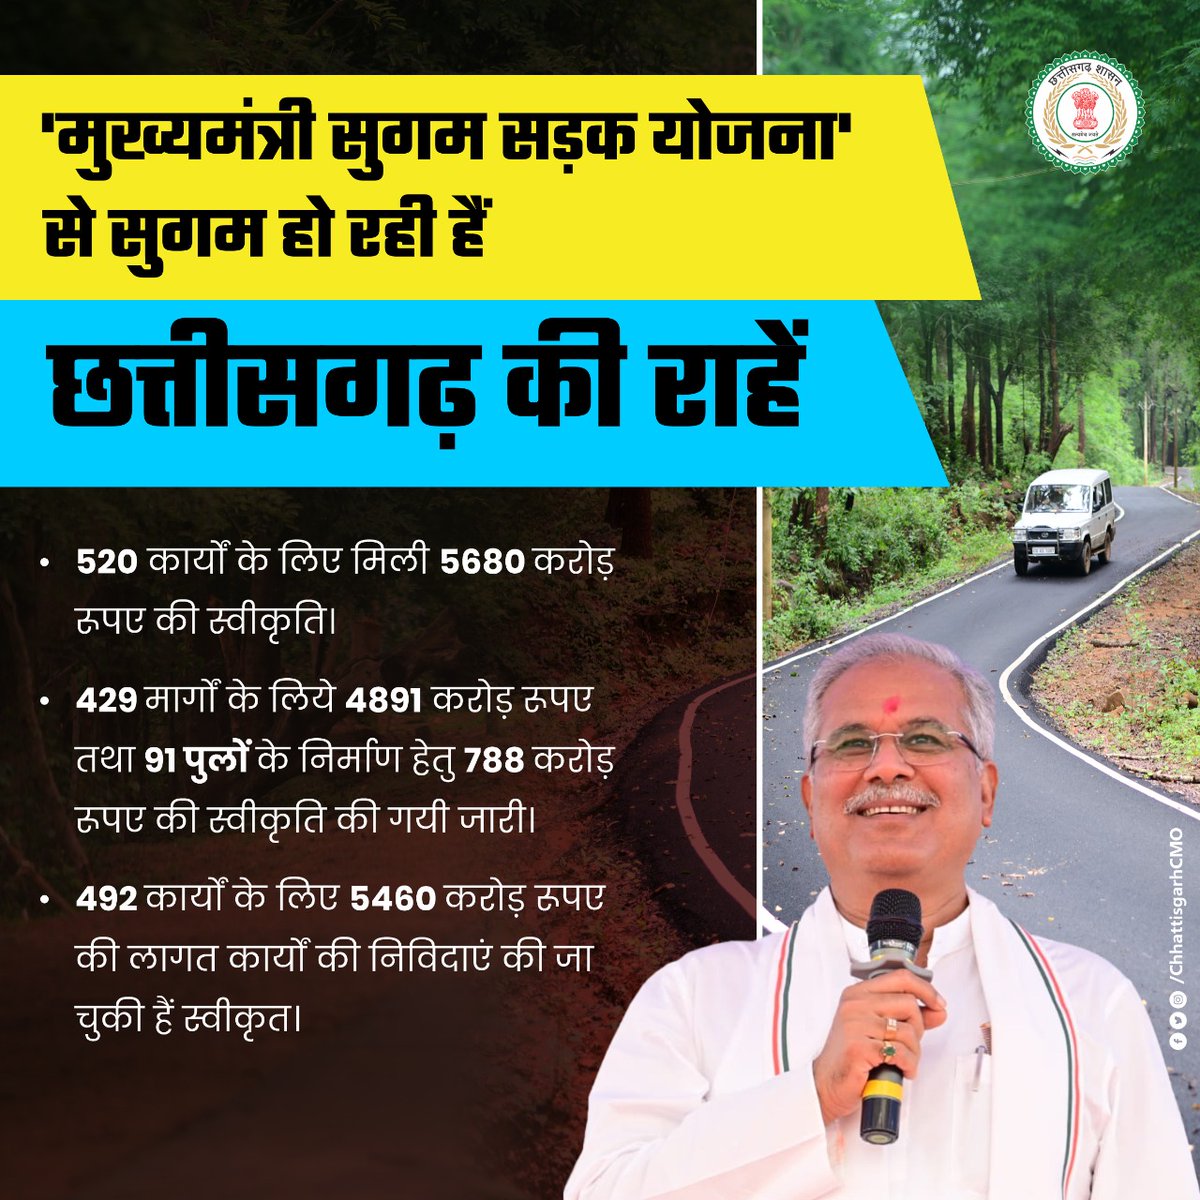 मुख्यमंत्री श्री @bhupeshbaghel के निर्देशानुसार प्रदेश में आवागमन साधनों को मजबूत करने के लिए युद्ध स्तर पर जारी है सड़कों एवं पुल-पुलियों का निर्माण कार्य।

#Chhattisgarh #CGModel #cgdevelopment #GoodGovernance #infrastructure #RoadAccident